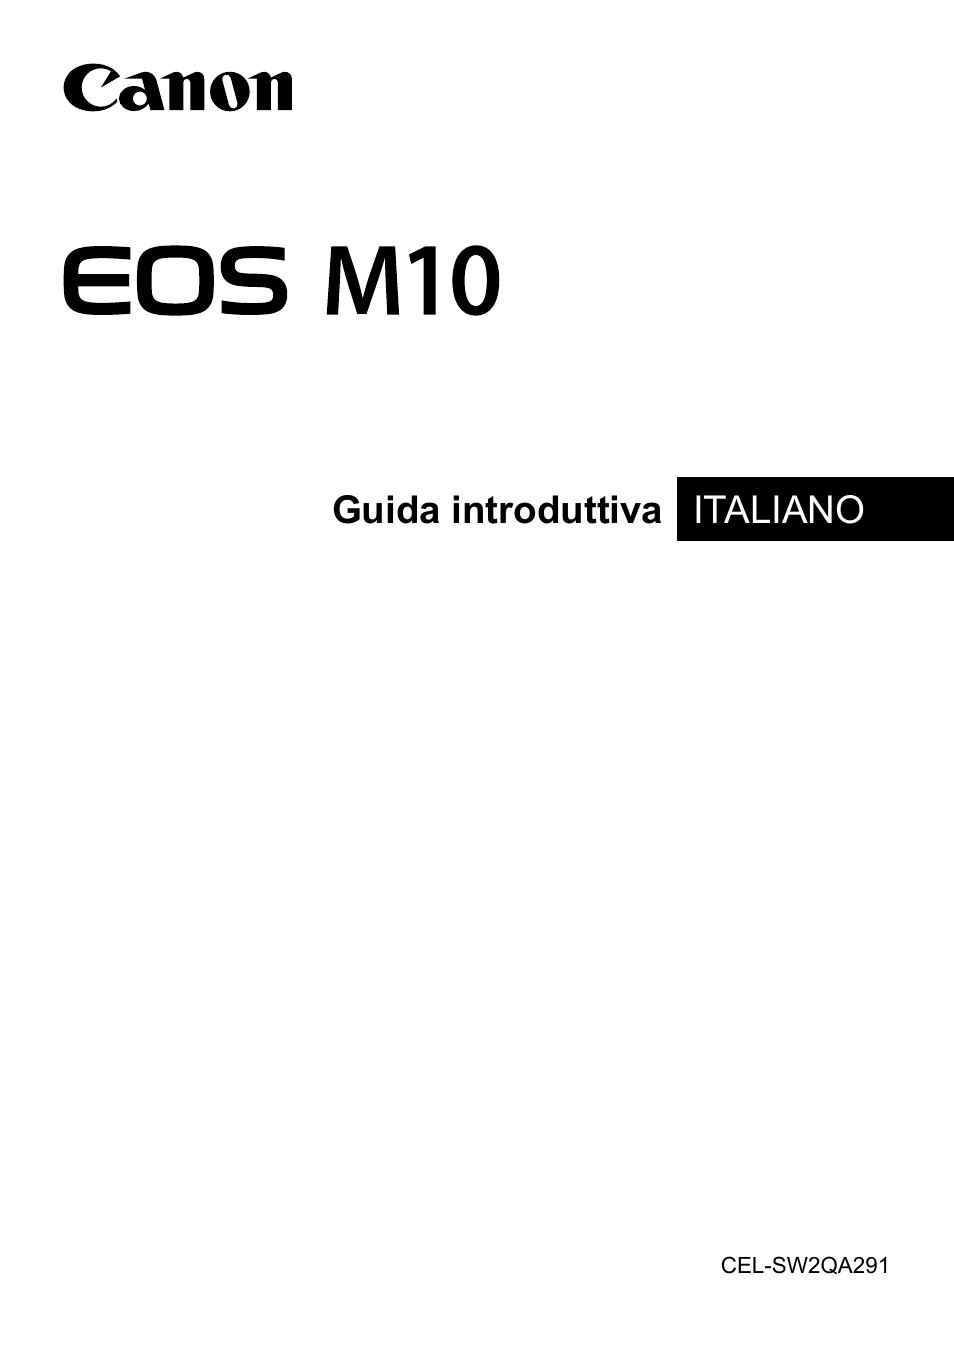 Canon EOS M10 Manuale d'uso | Pagine: 21